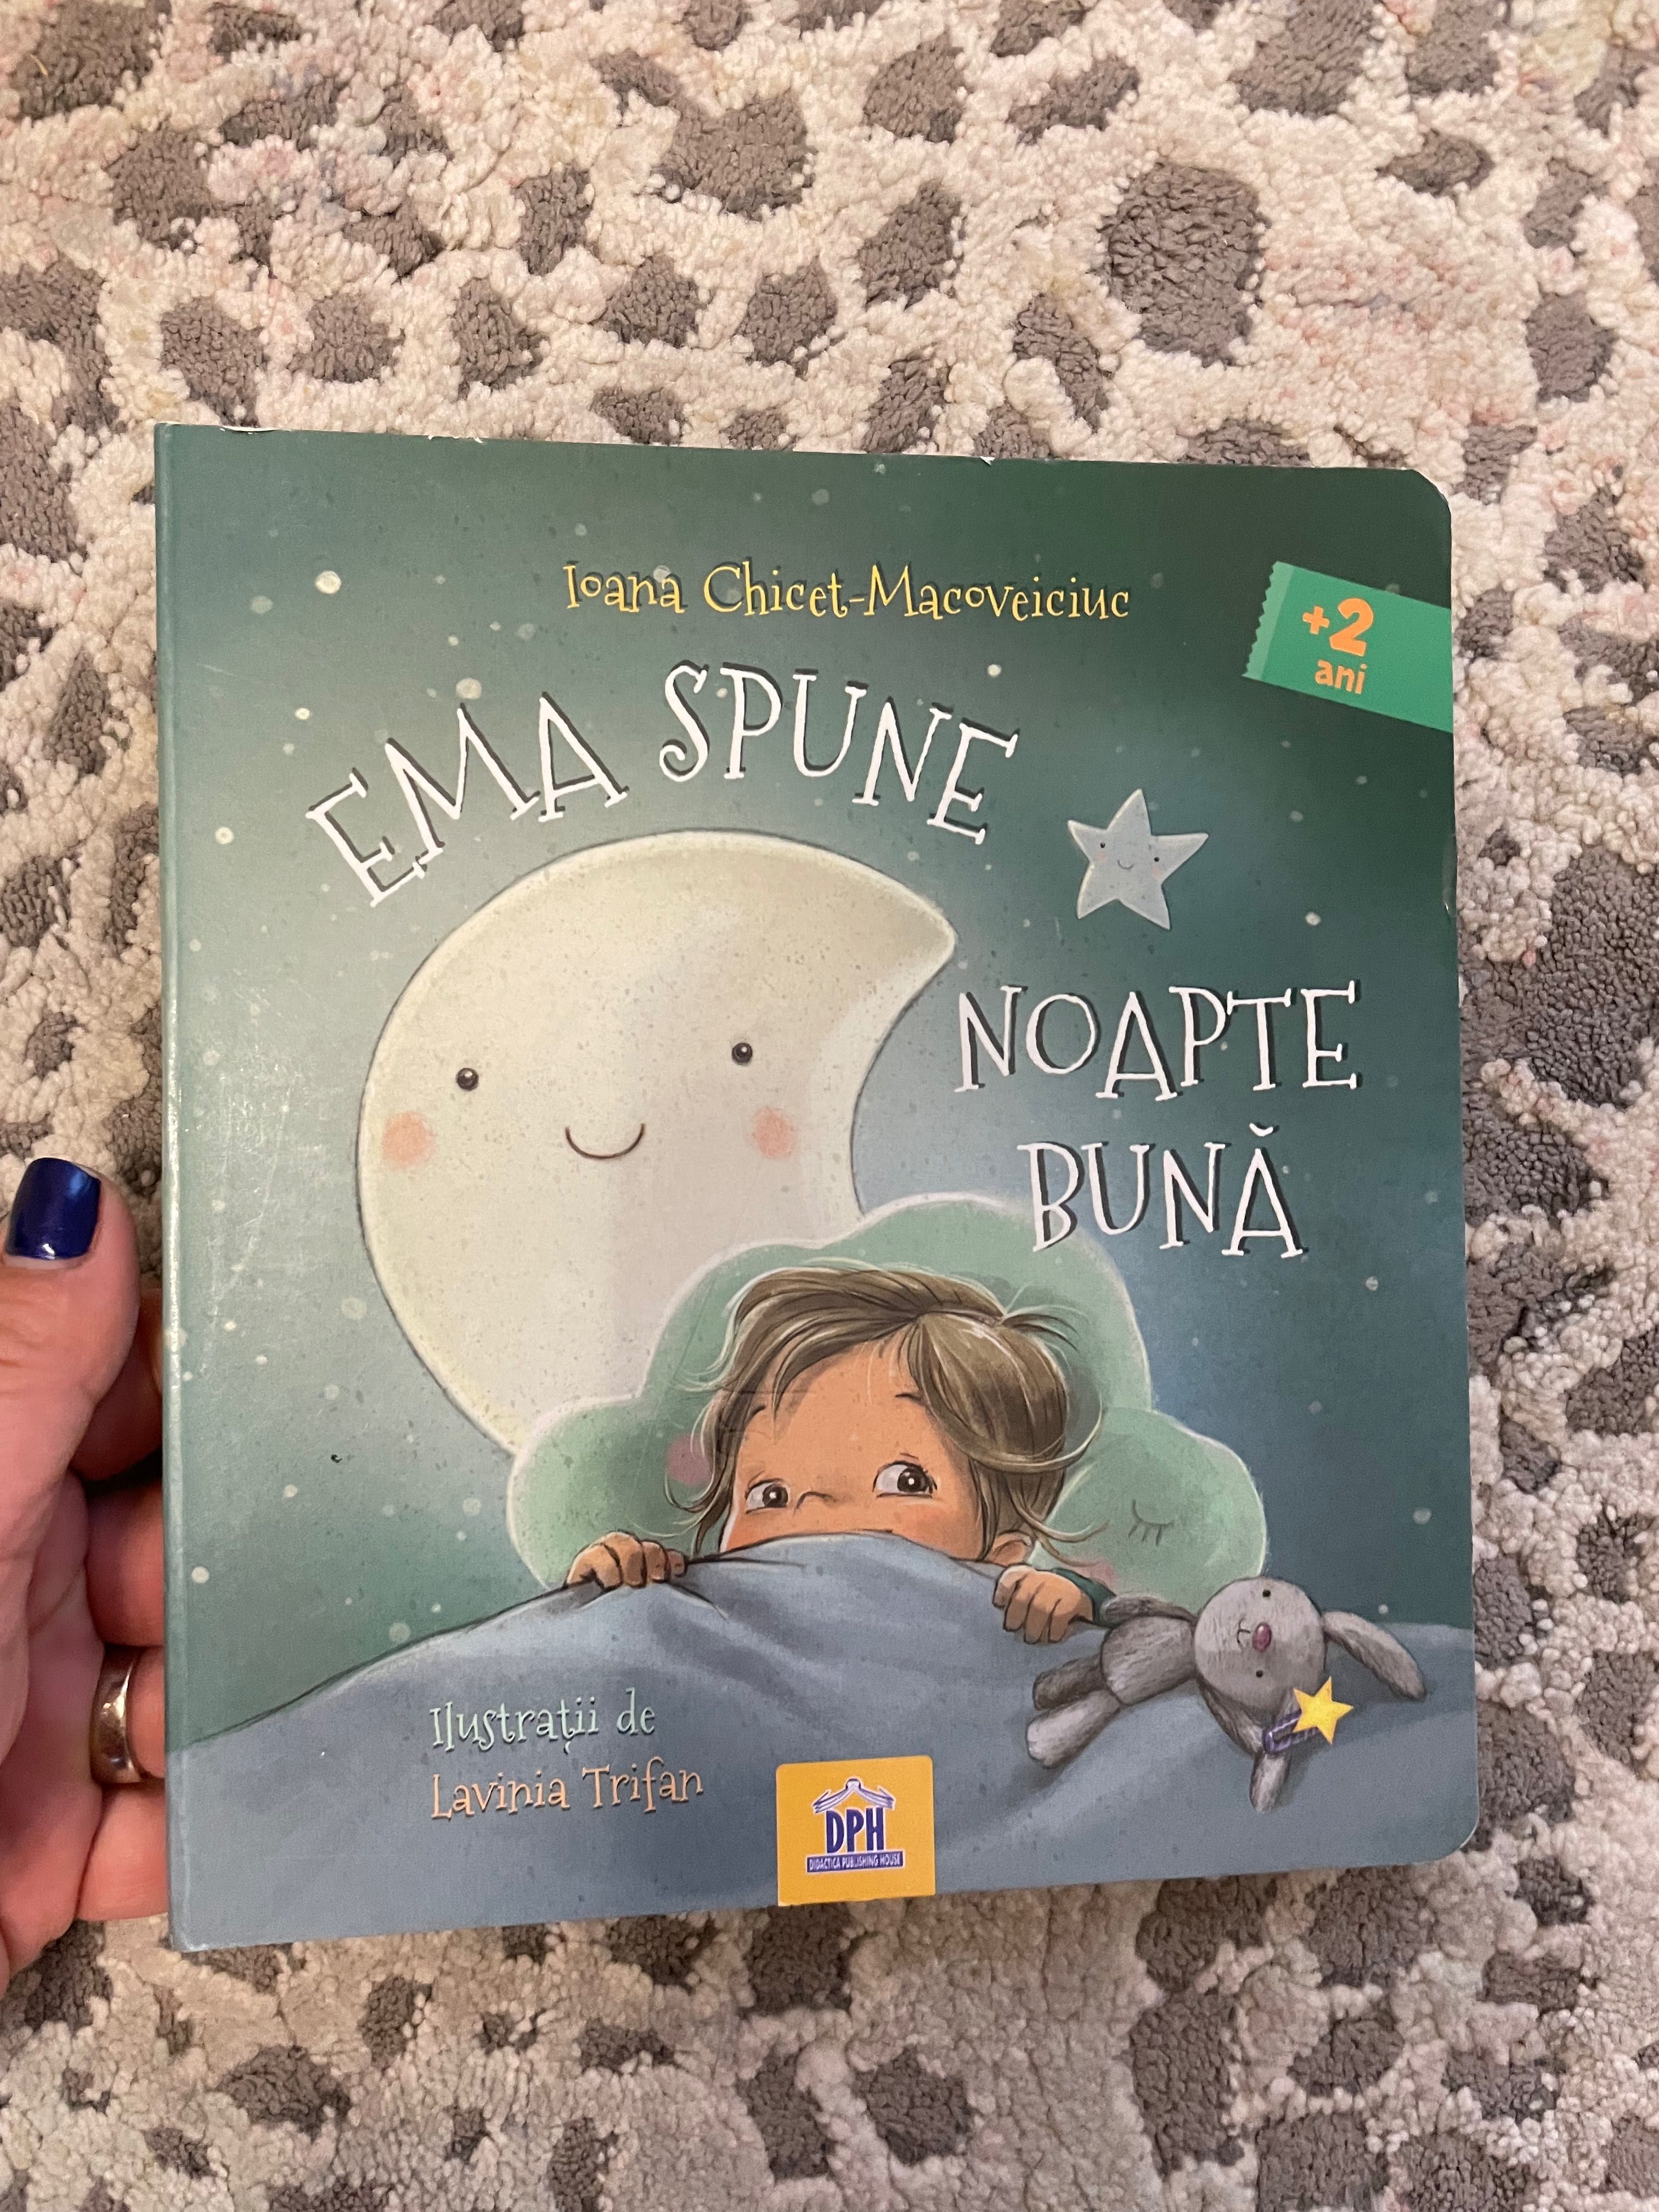 Carti pentru copii- Ioana Chicet Macoveiciuc